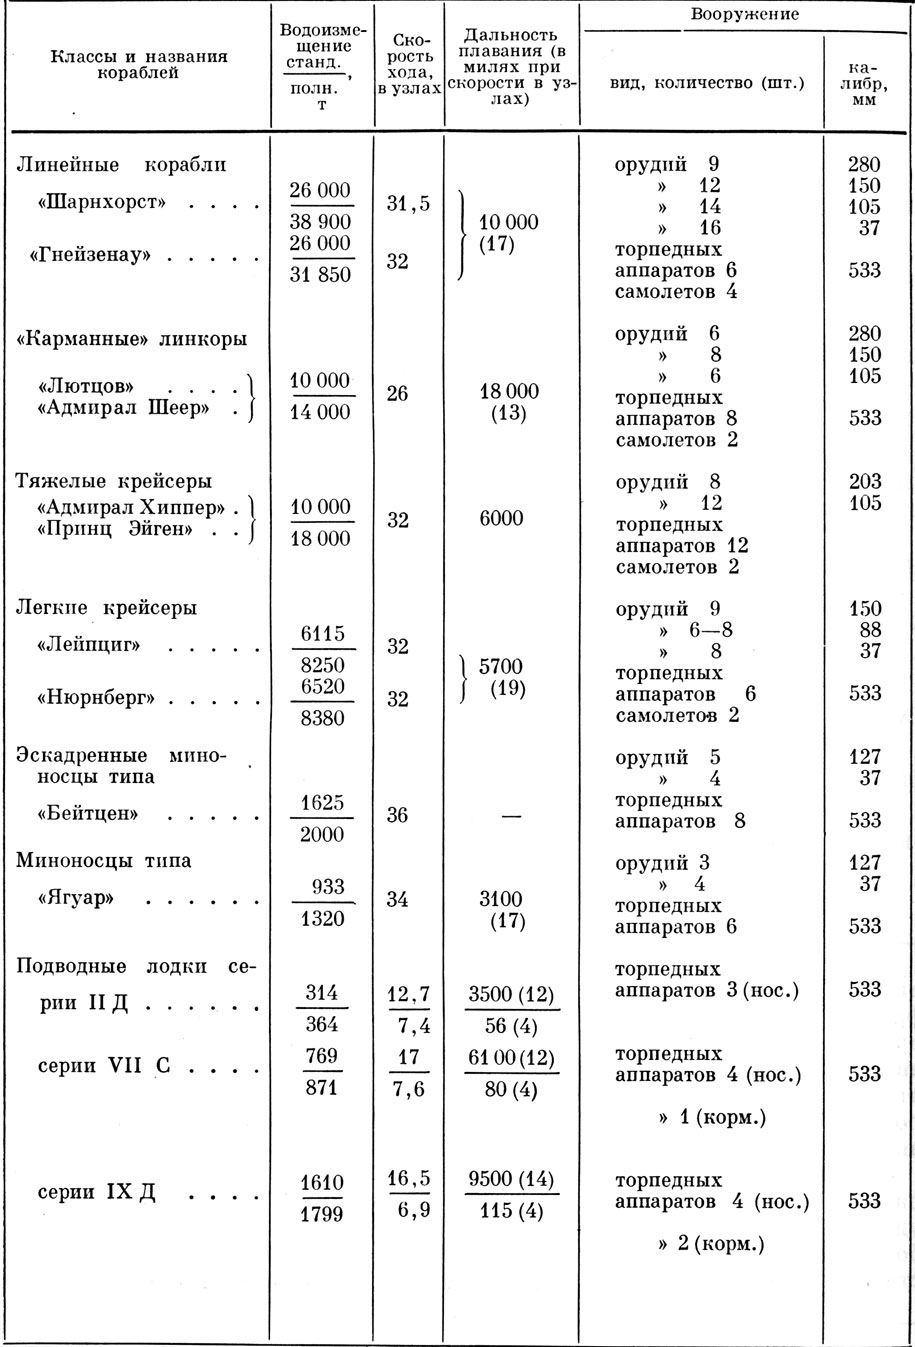 Таблица 21. Тактико-технические данные основных боевых кораблей германского флота (на июнь 1941 г.)(Морской атас. Т. III. Ч. 2. М., 1963, л. 17.)